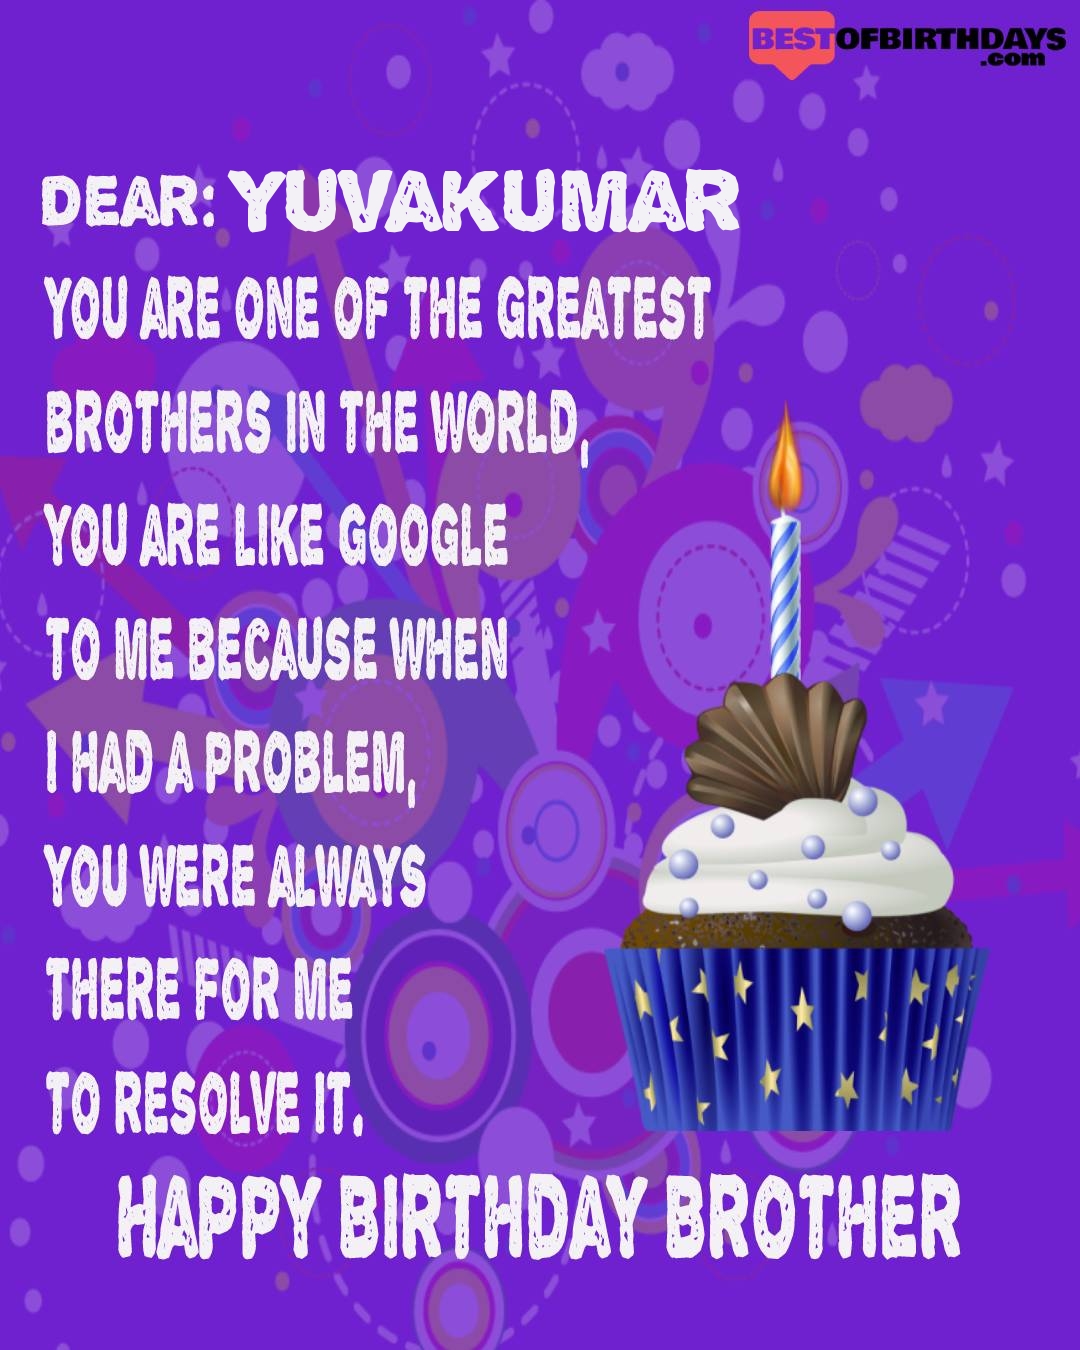 Happy birthday yuvakumar bhai brother bro